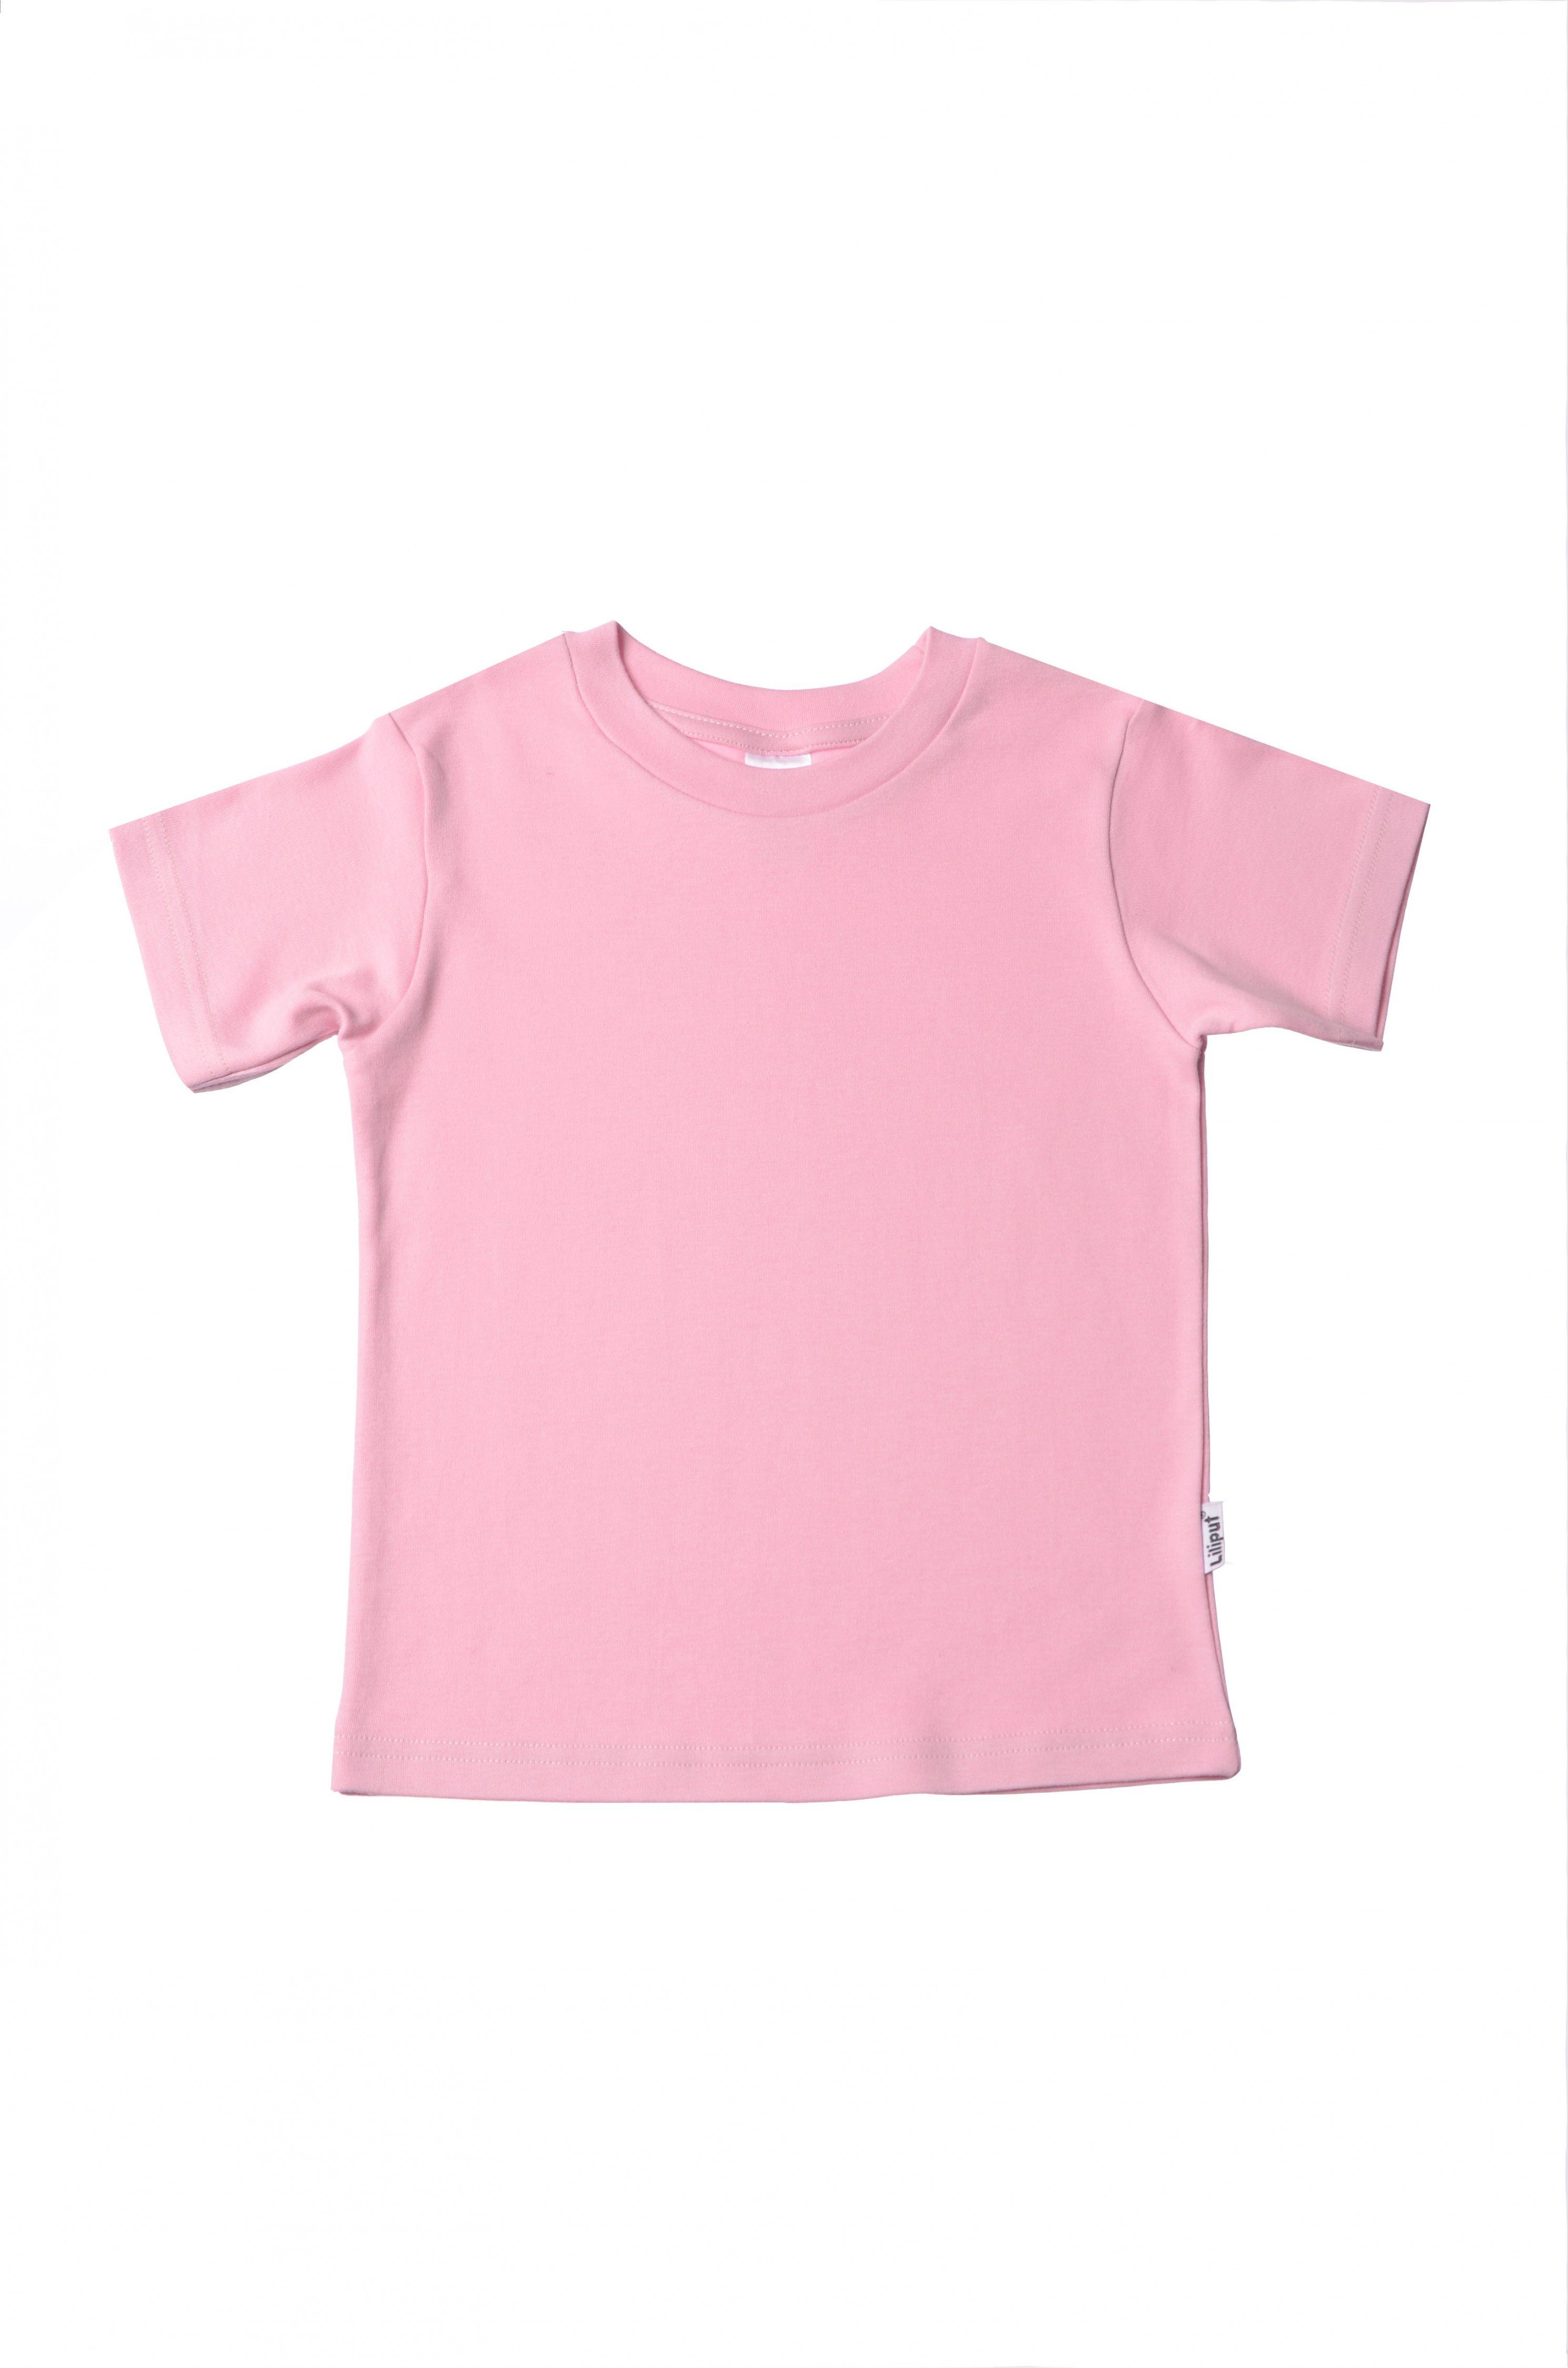 Kaufen Sie die neuesten Artikel im Ausland! Liliput T-Shirt in rosa Design niedlichem